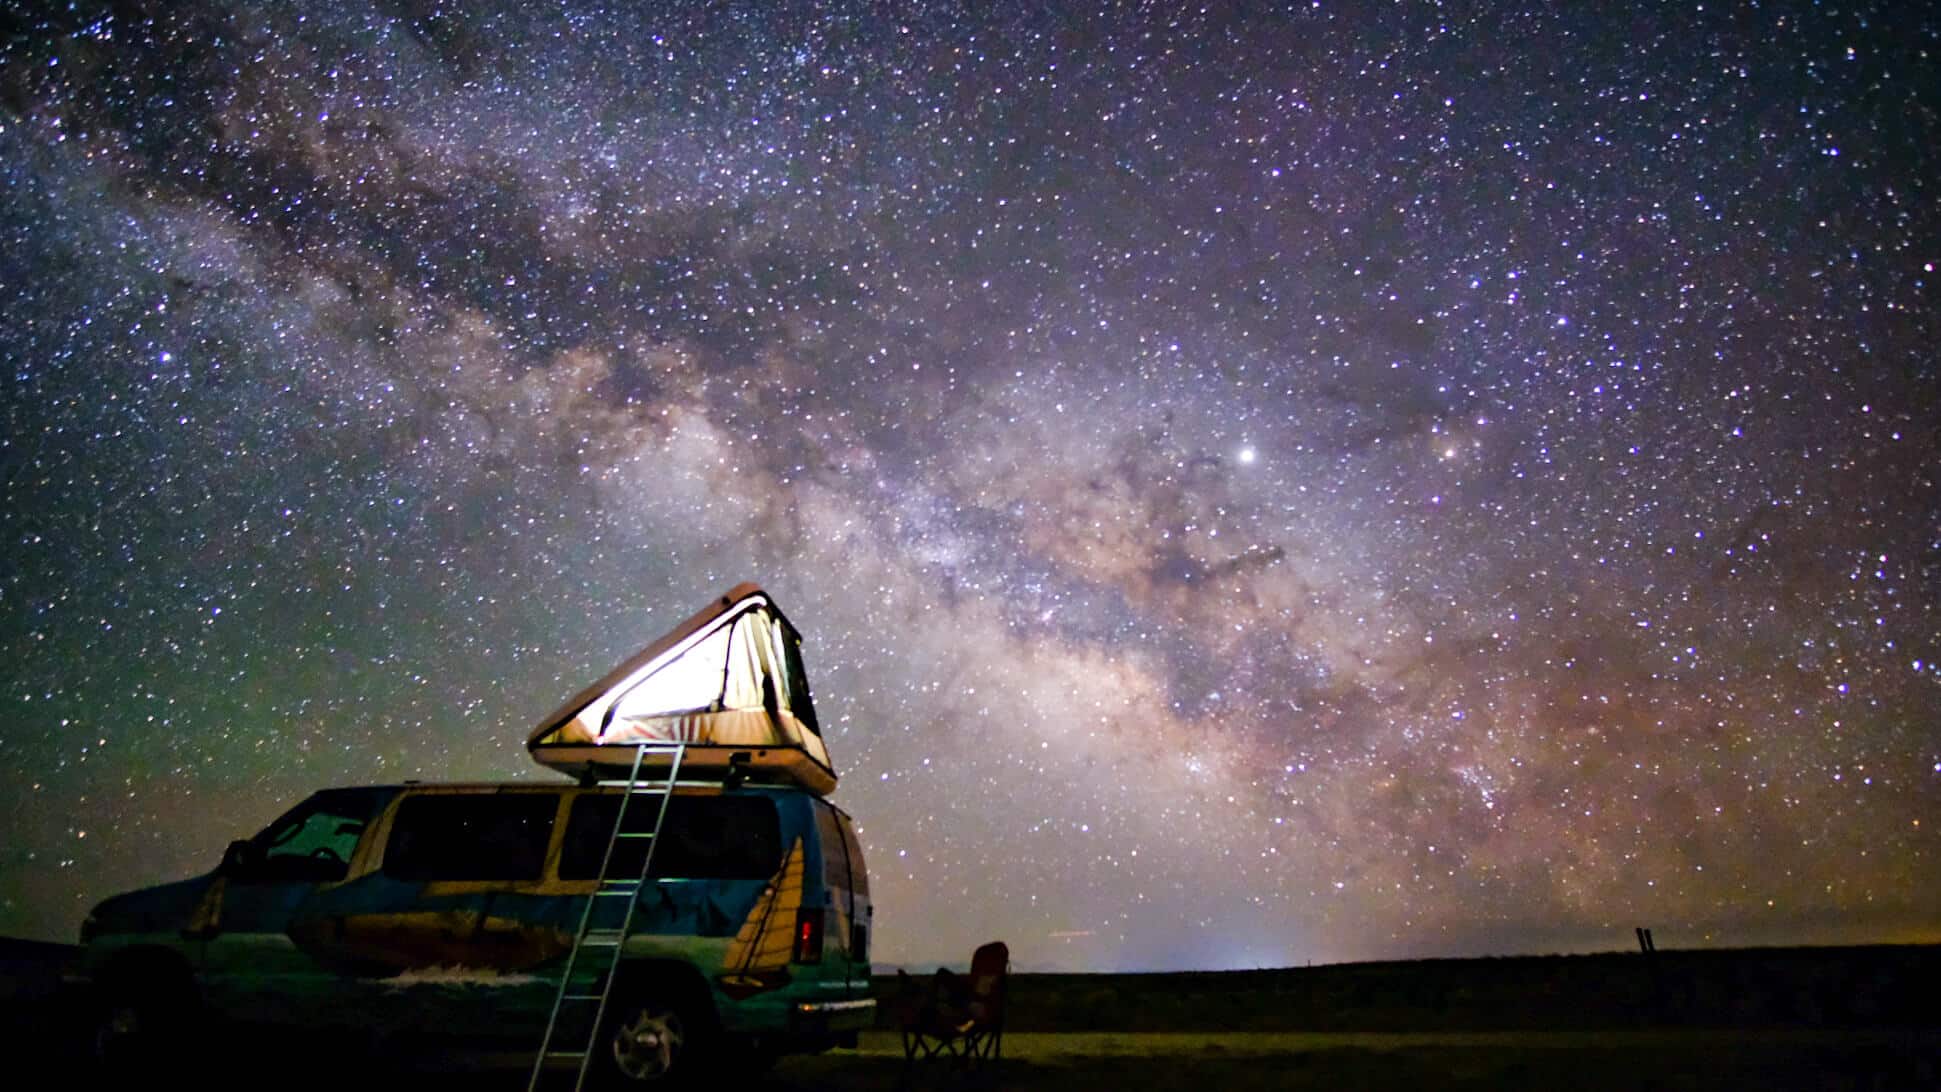 Campervan under the stars at night